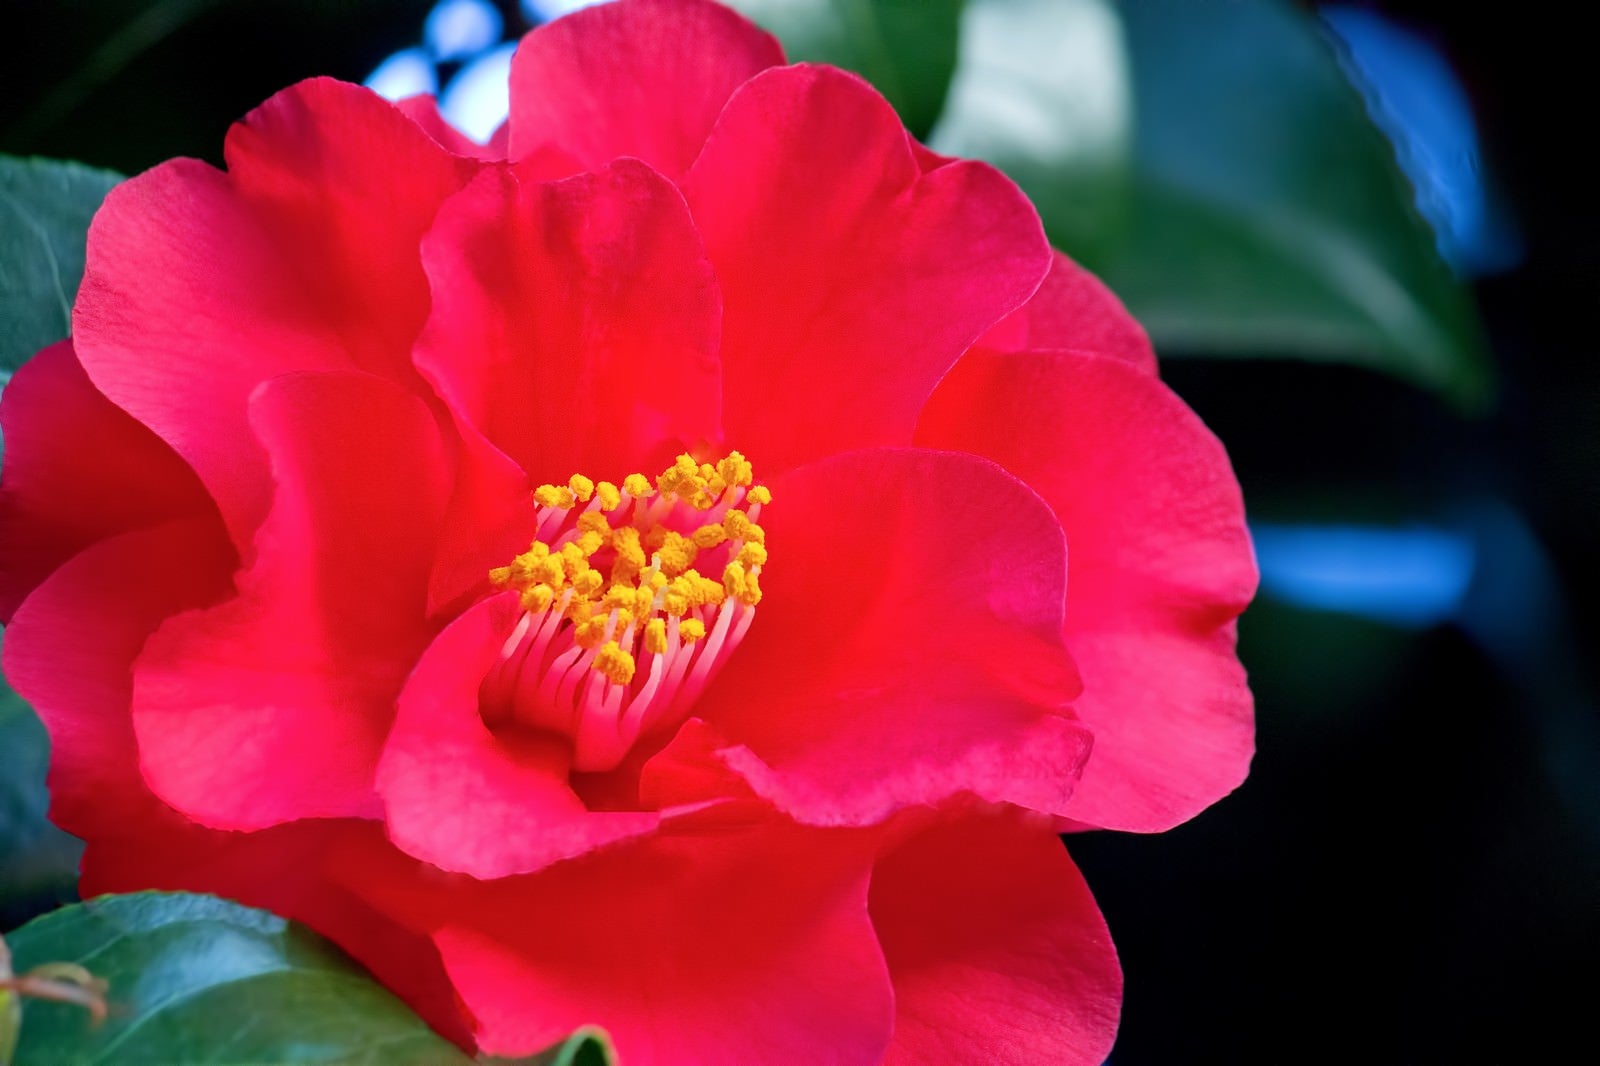 「真っ赤な椿の花」の写真